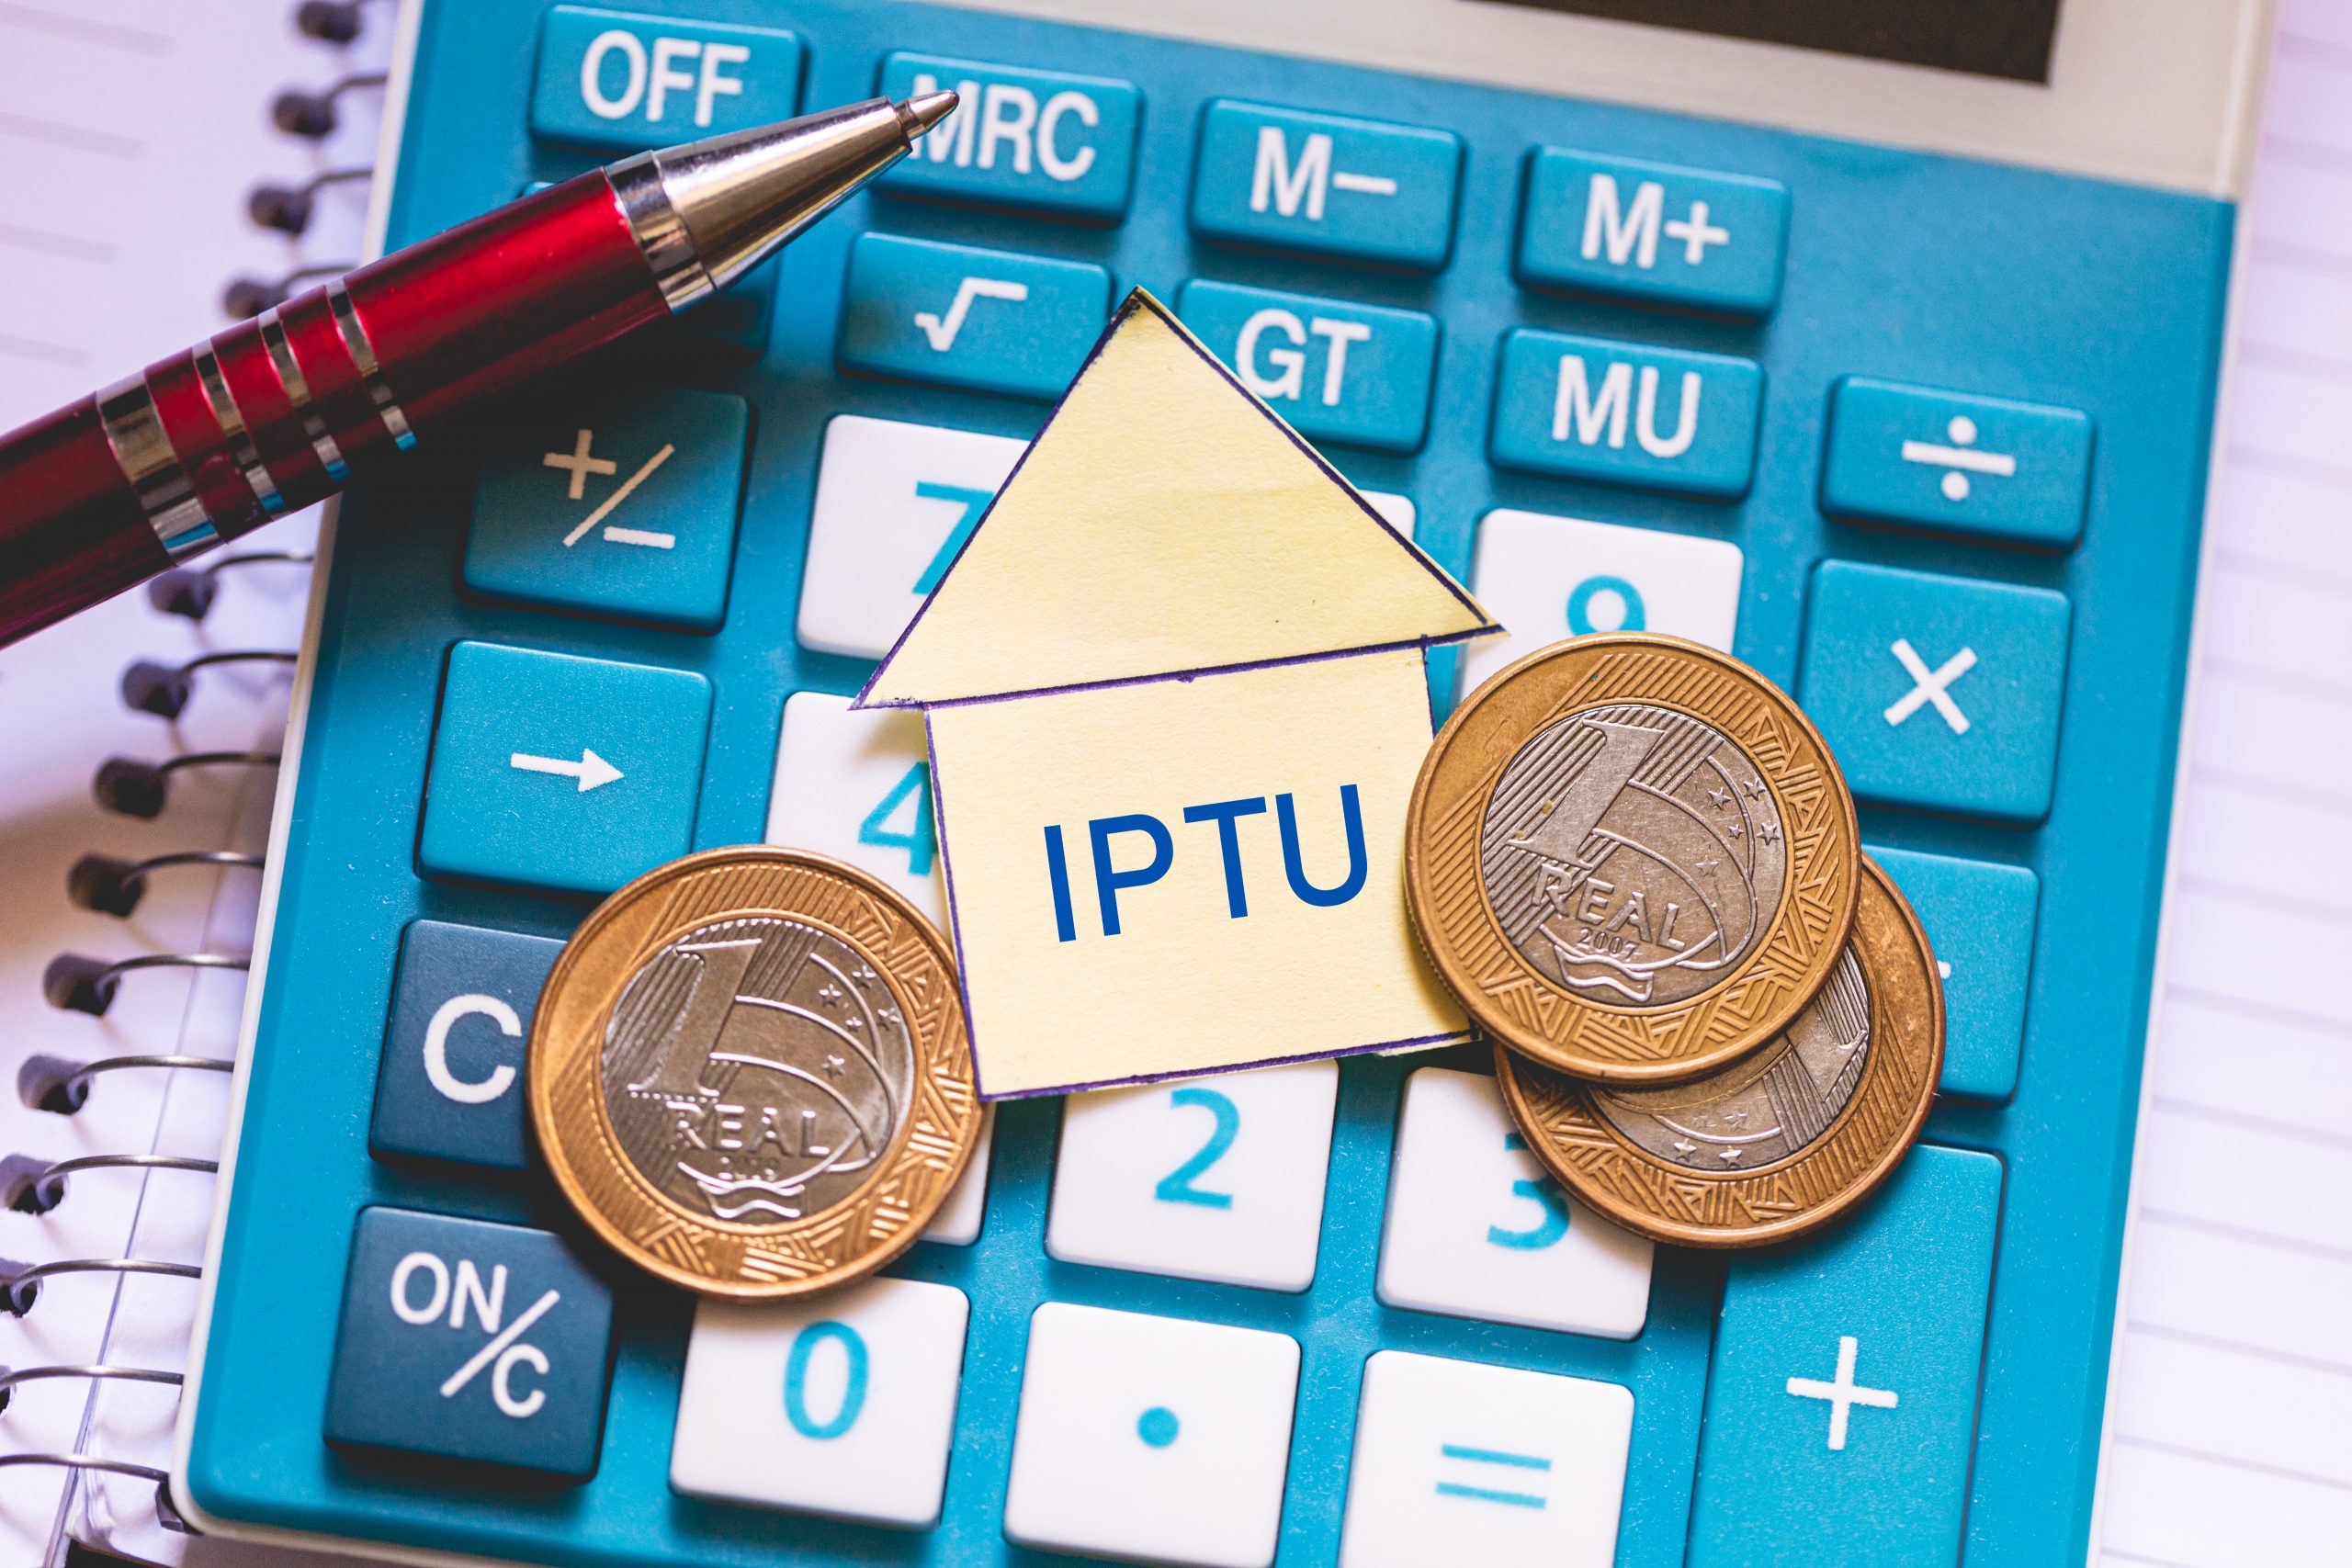 Contribuinte já pode aderir ao IPTU/ITU Digital; pagamento à vista tem desconto maior este ano